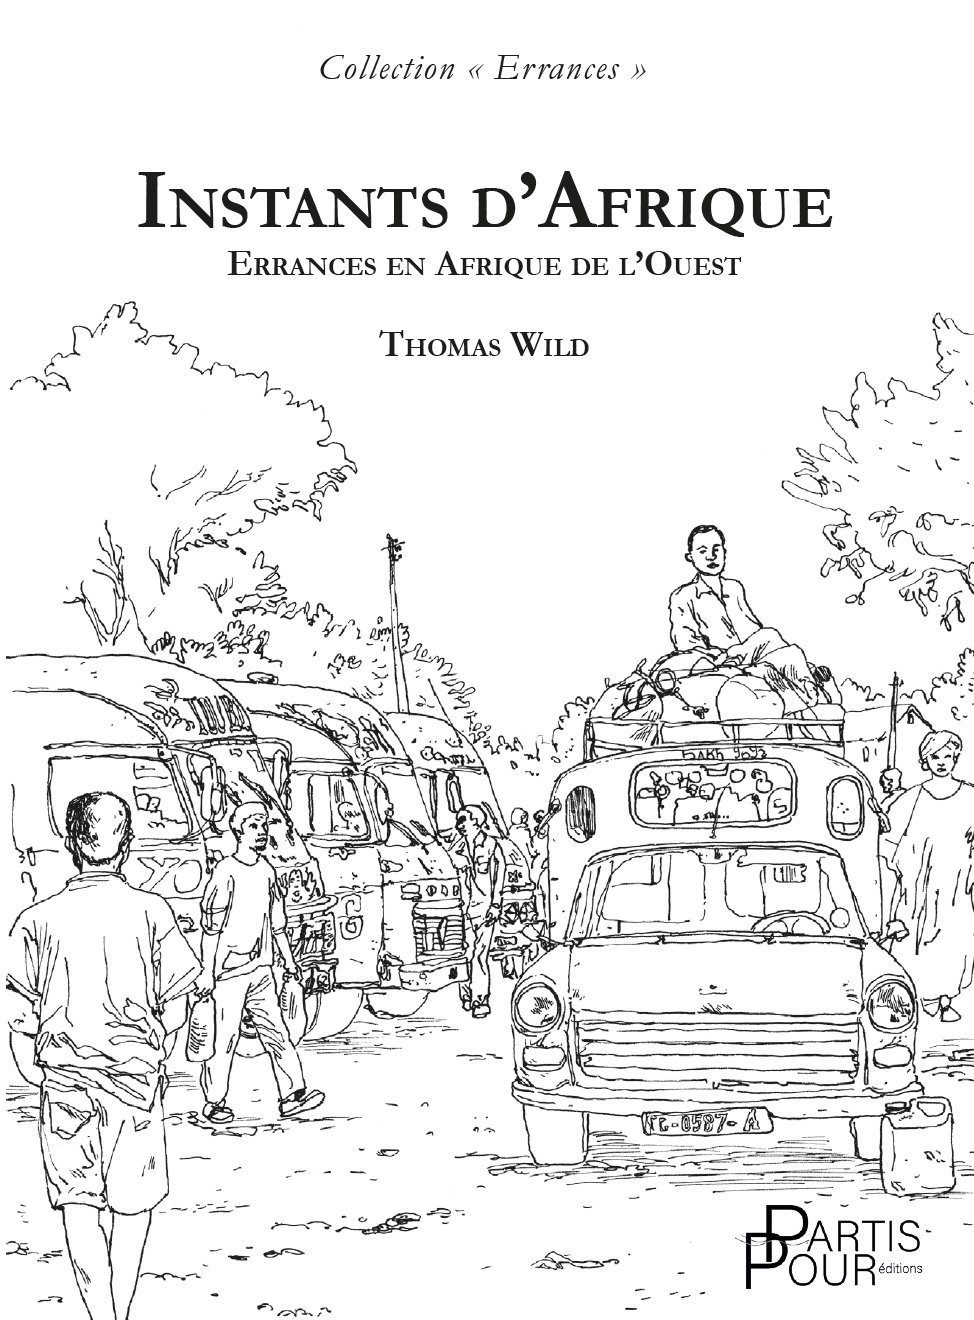 Instants d'Afrique. Errances en Afrique de l'Ouest. Thomas Wild. Editions Partis Pour